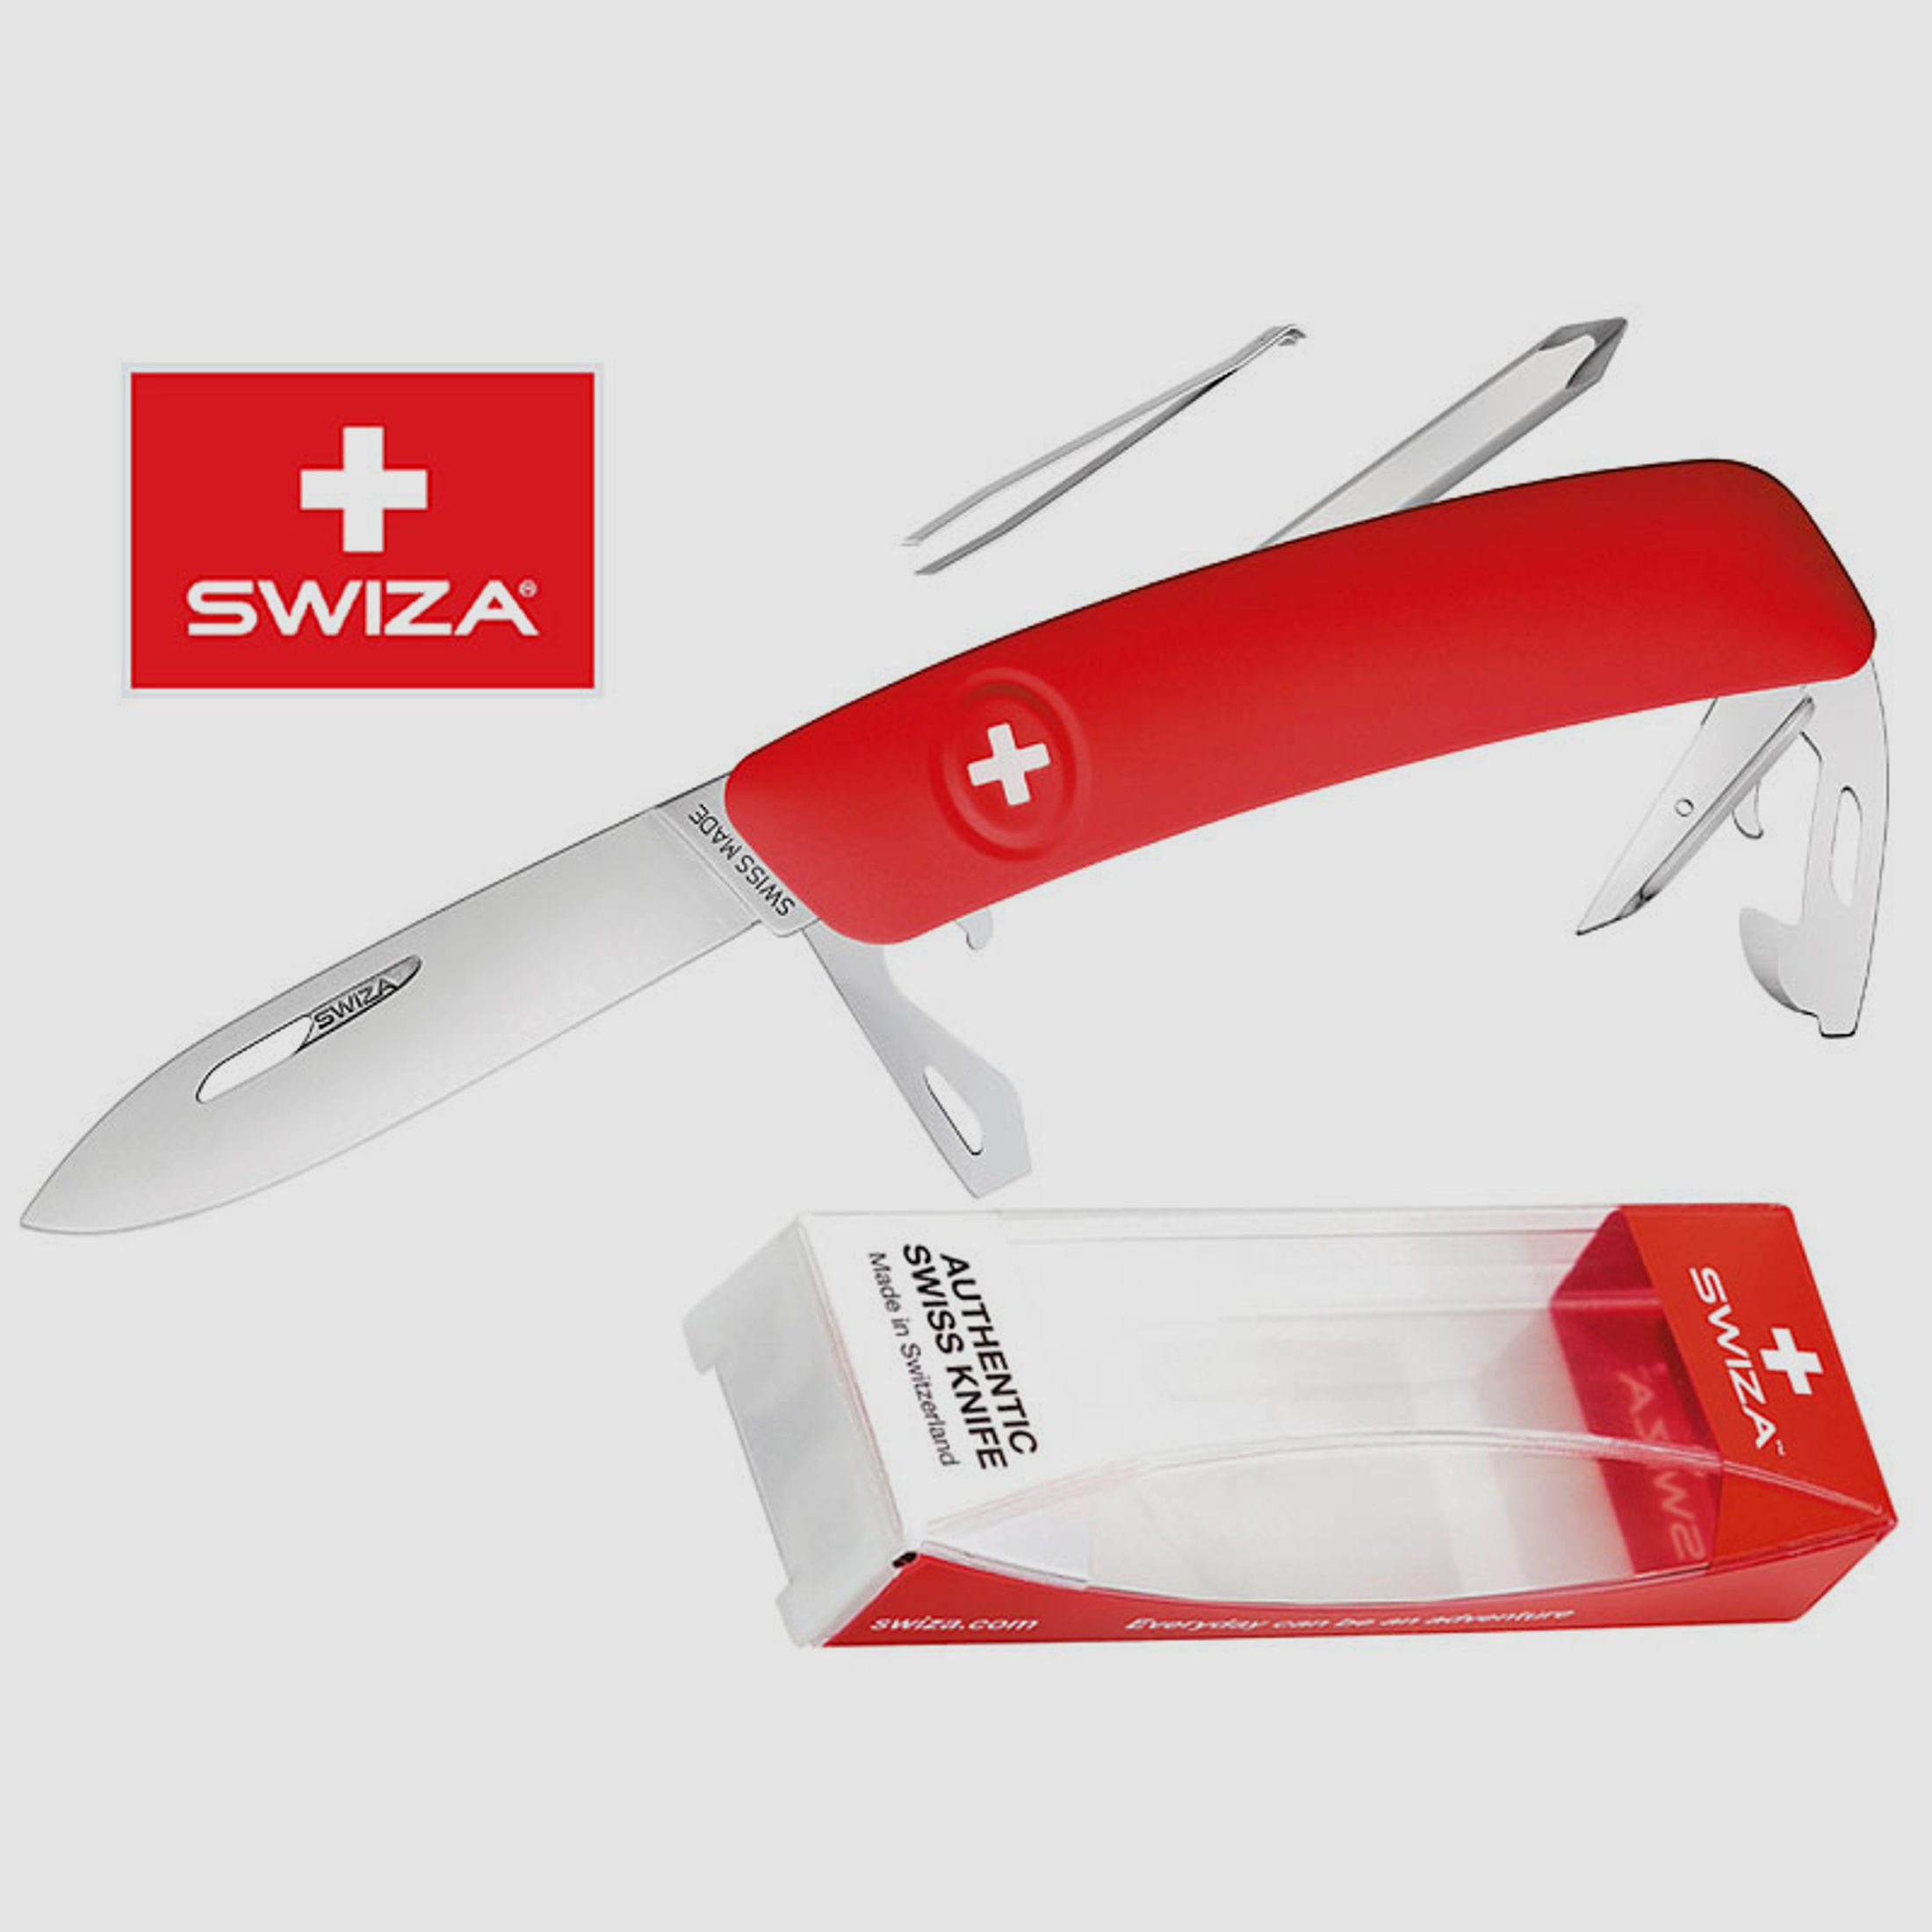 SWIZA Schweizer Messer D04, rot, Edelstahl 440, 11 Funktionen, Kreuzschlitzdreher, Multi-Tool